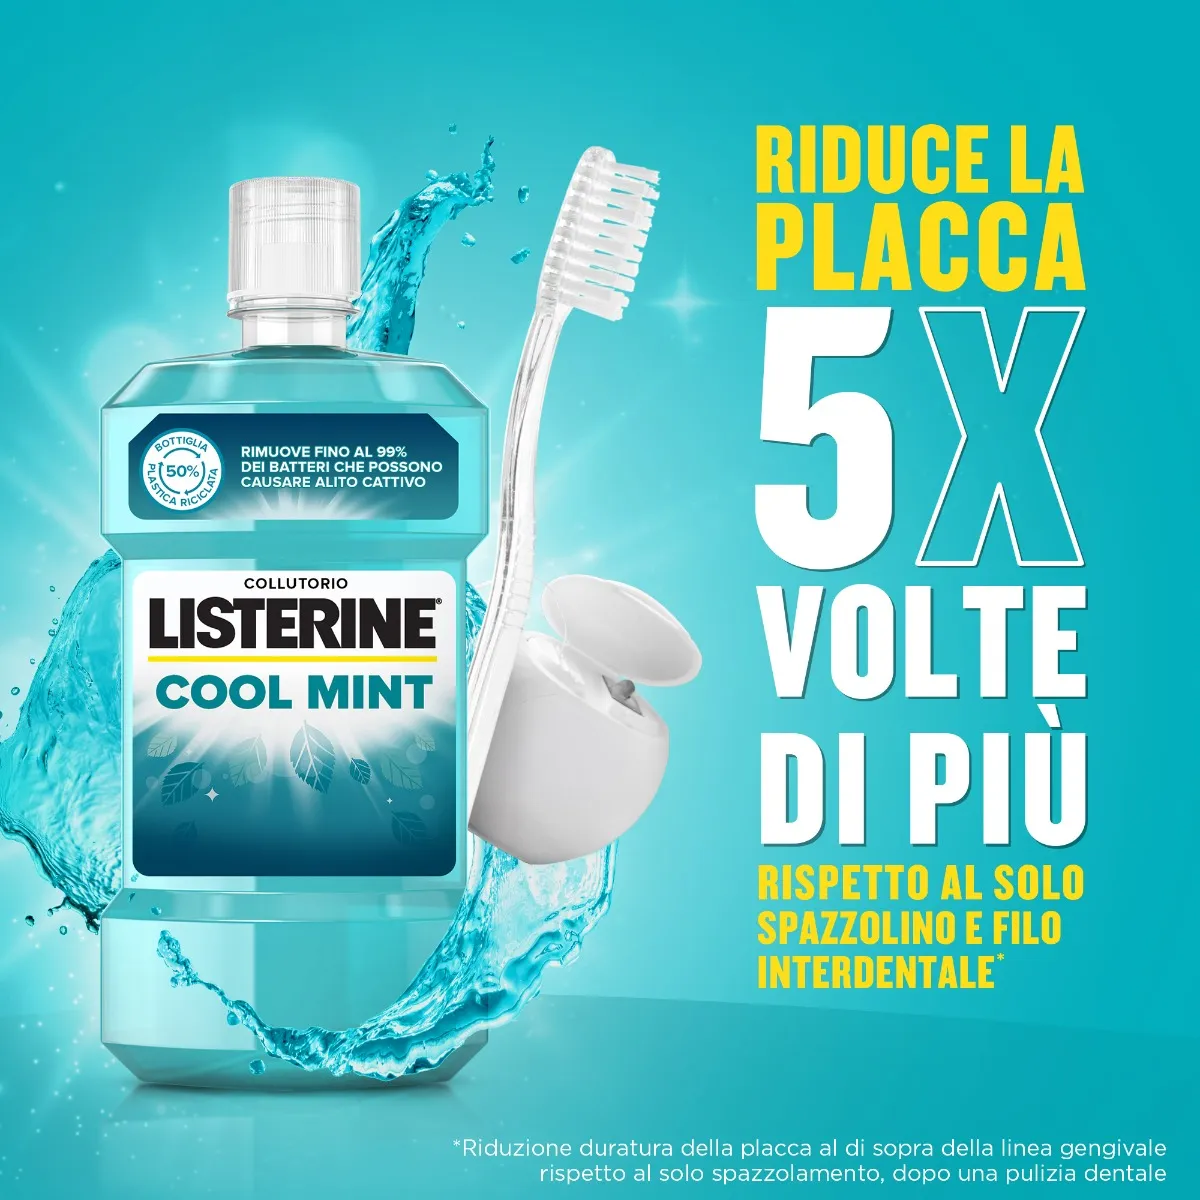 Listerine Coolmint Collutorio Antiplacca 500 ml Rinfrescante Alito